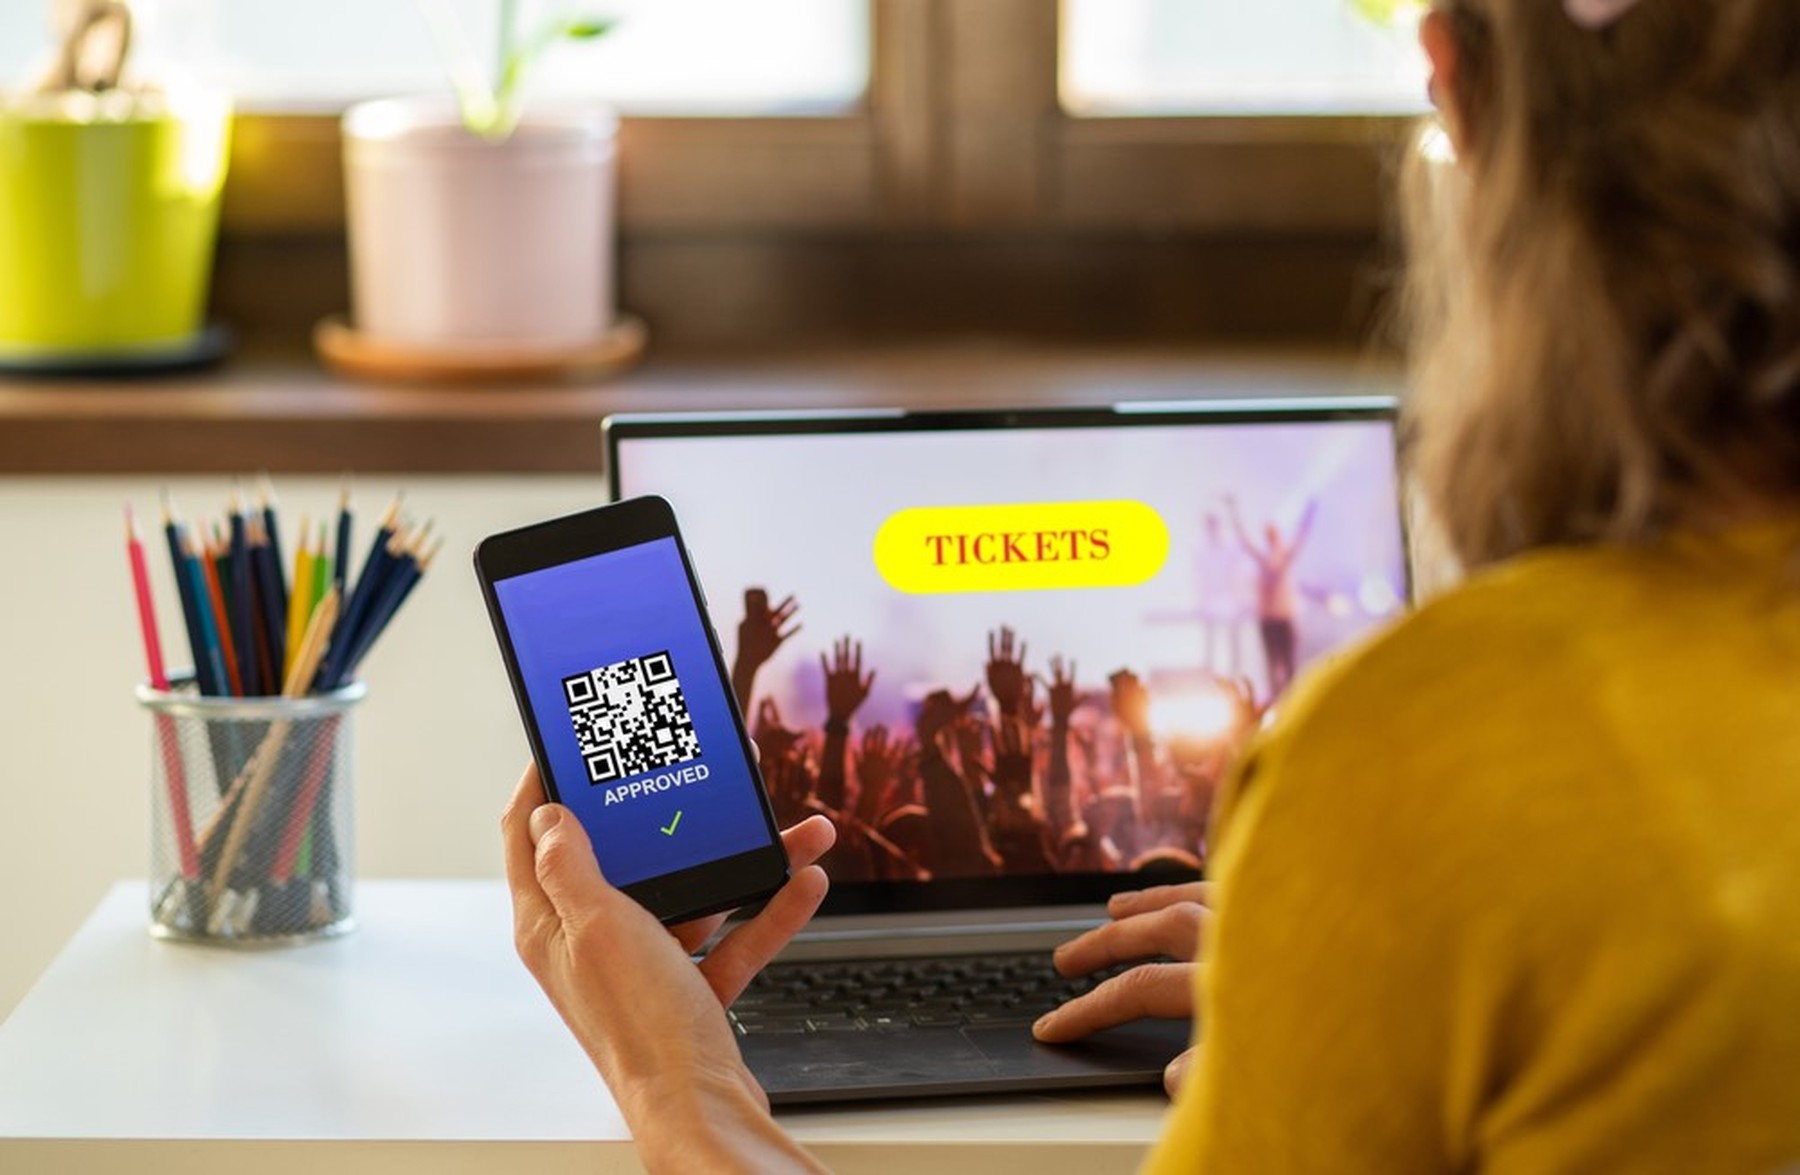 Mujer mirando tickets para un concierto en su portátil. Con una mano sostiene un smartphone donde se ve un código QR con el fondo azul.